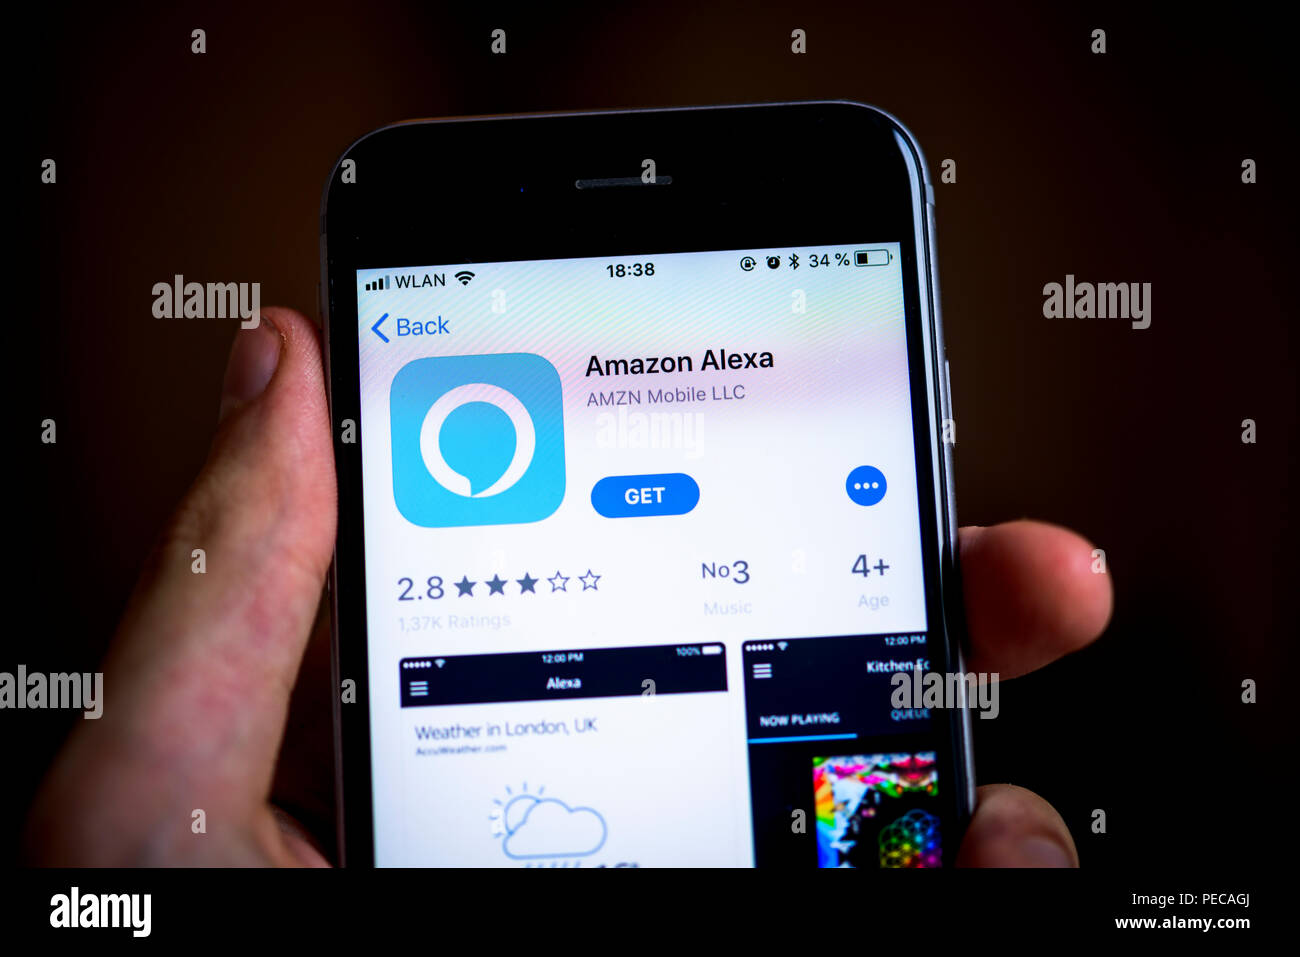 Mano sujetando el iPhone con Alexa Amazon App en la App Store de Apple, el  Asistente Virtual, la Inteligencia Artificial, app icono, mostrar  Fotografía de stock - Alamy